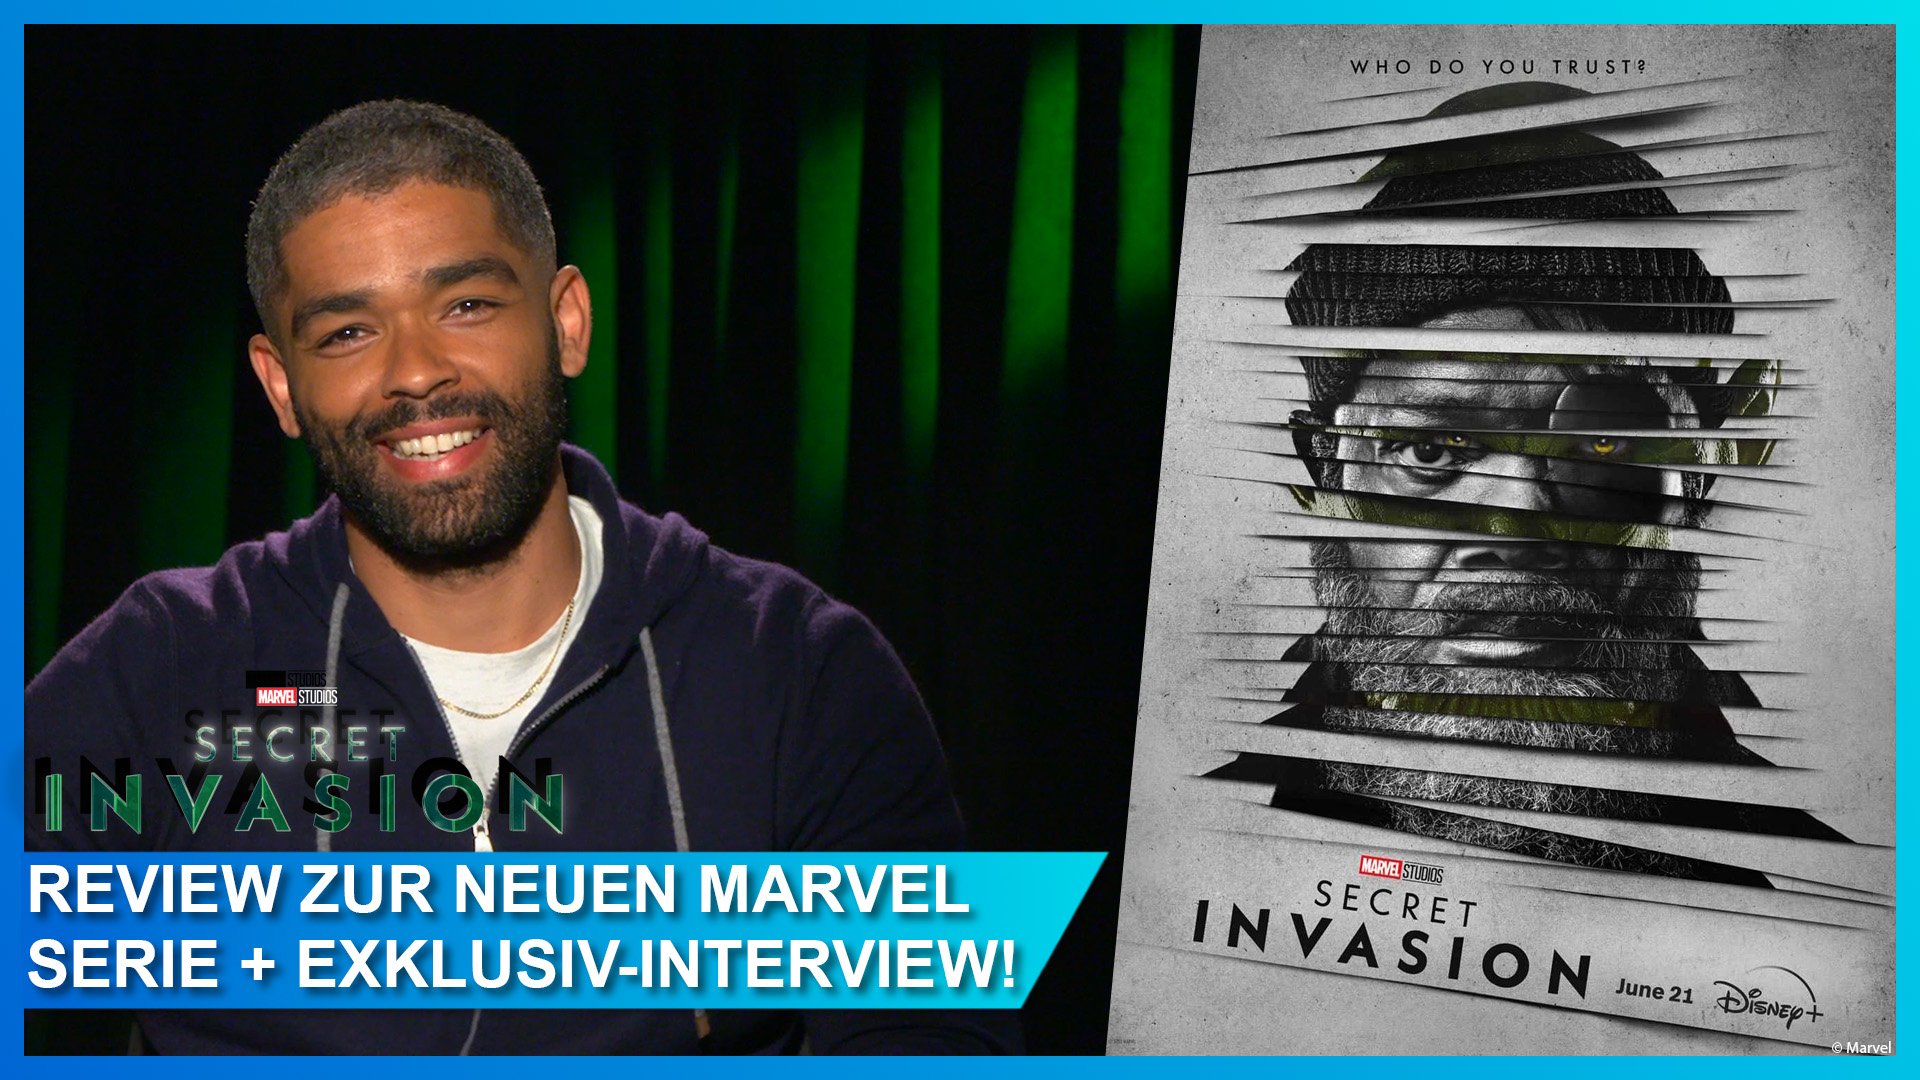 Review zu Marvels Secret Invasion mit Interview mit Kingsley Ben-Adir (Gravik)